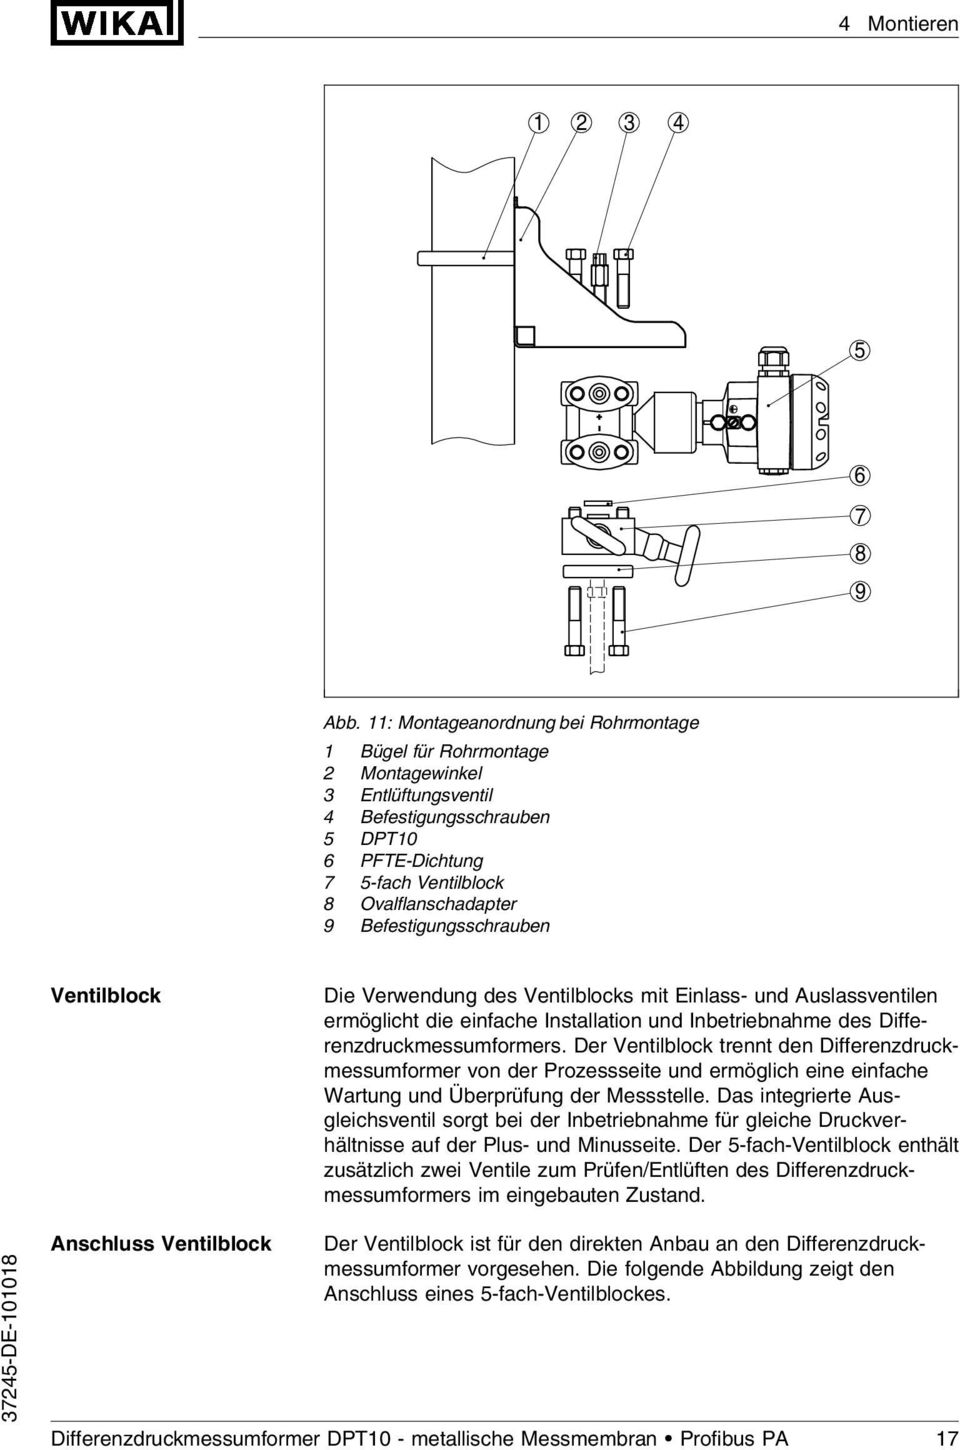 Befestigungsschrauben Ventilblock Die Verwendung des Ventilblocks mit Einlass- und Auslassventilen ermöglicht die einfache Installation und Inbetriebnahme des Differenzdruckmessumformers.